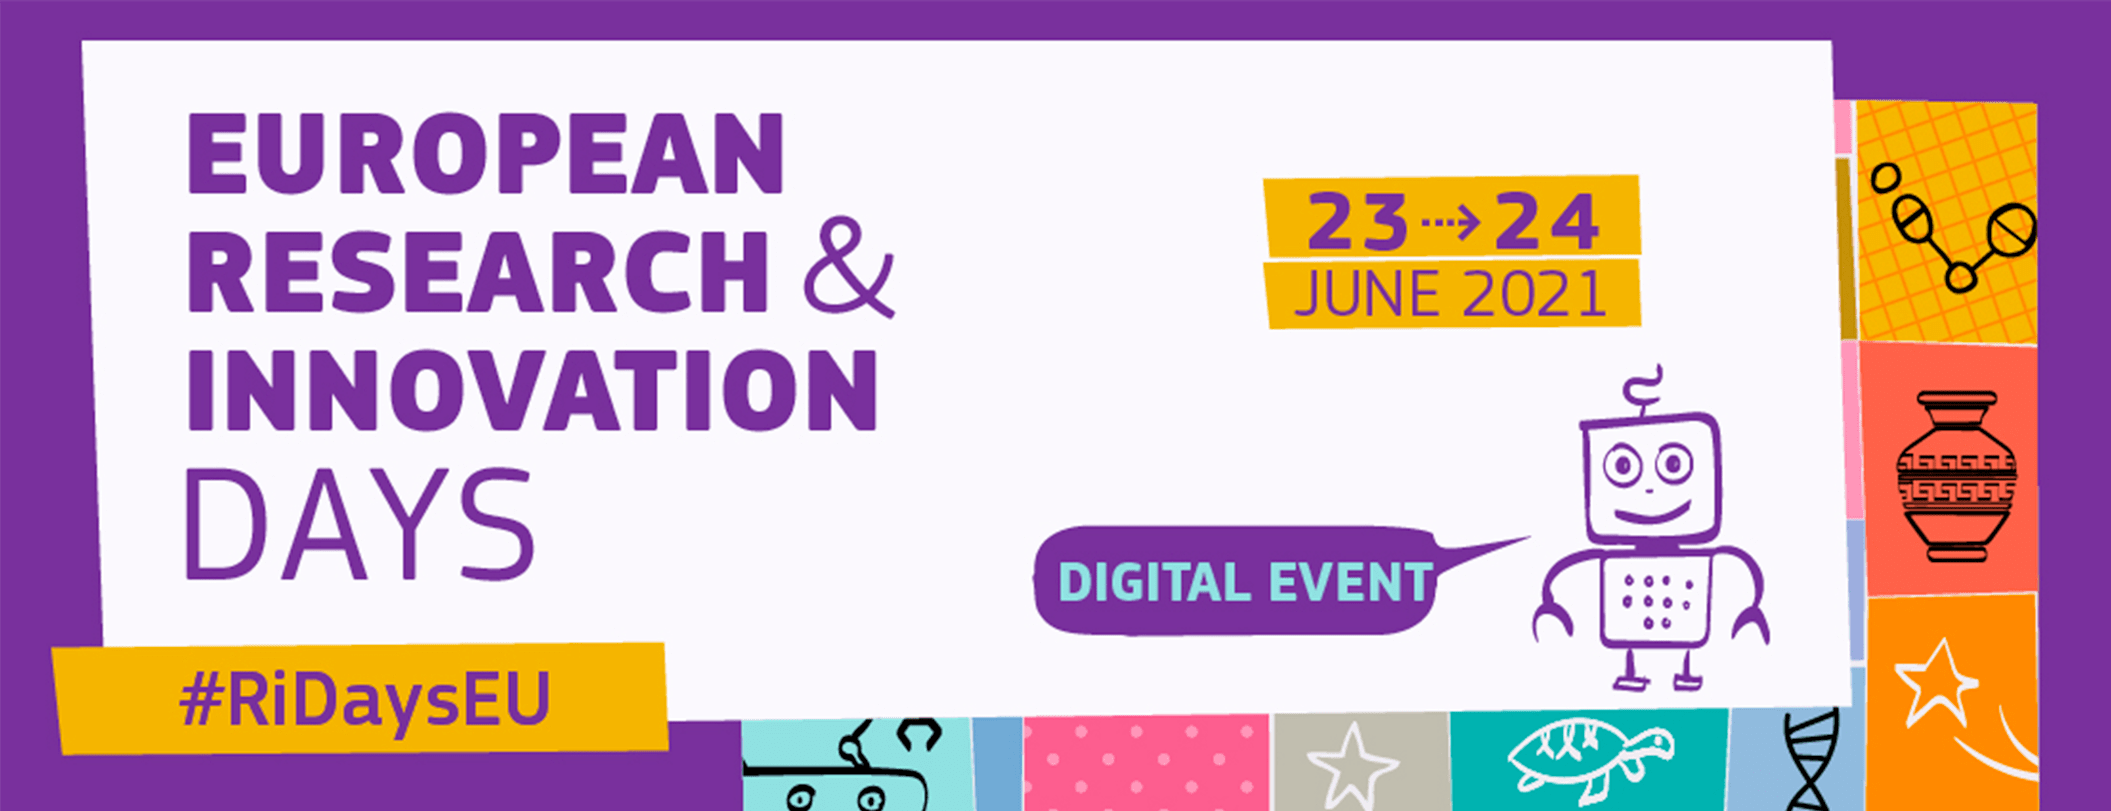 Проект программы - Европейские дни исследований и инноваций 2021 - 23-24 июня